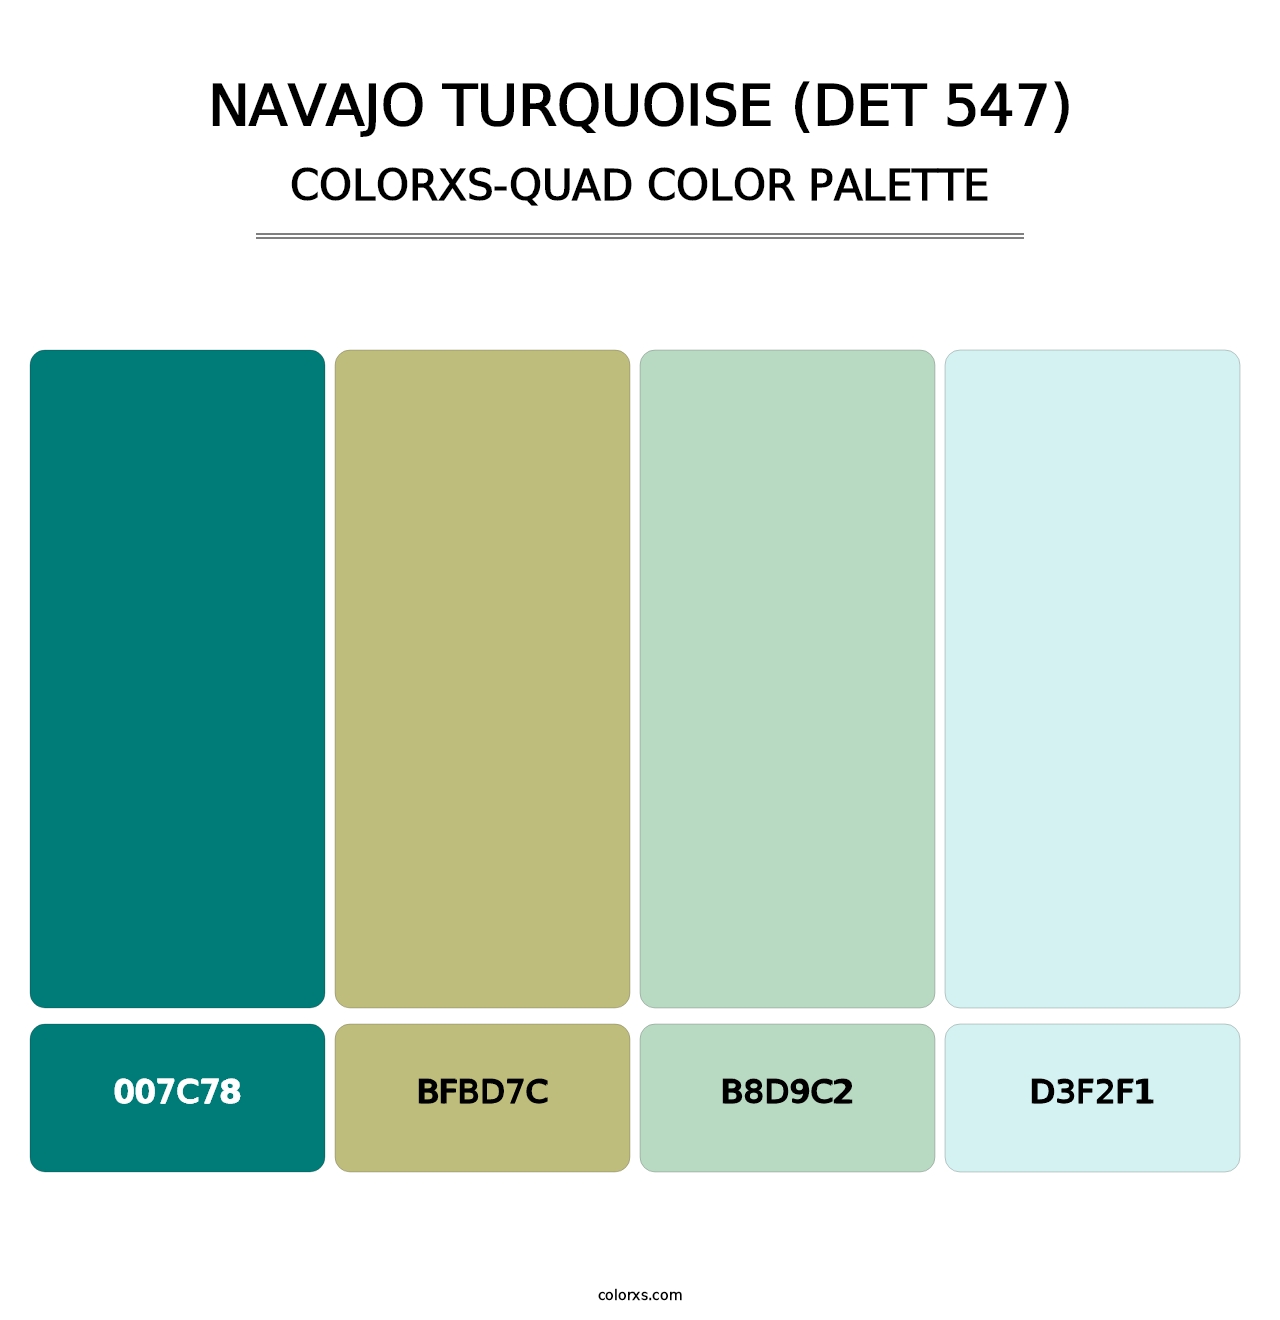 Navajo Turquoise (DET 547) - Colorxs Quad Palette